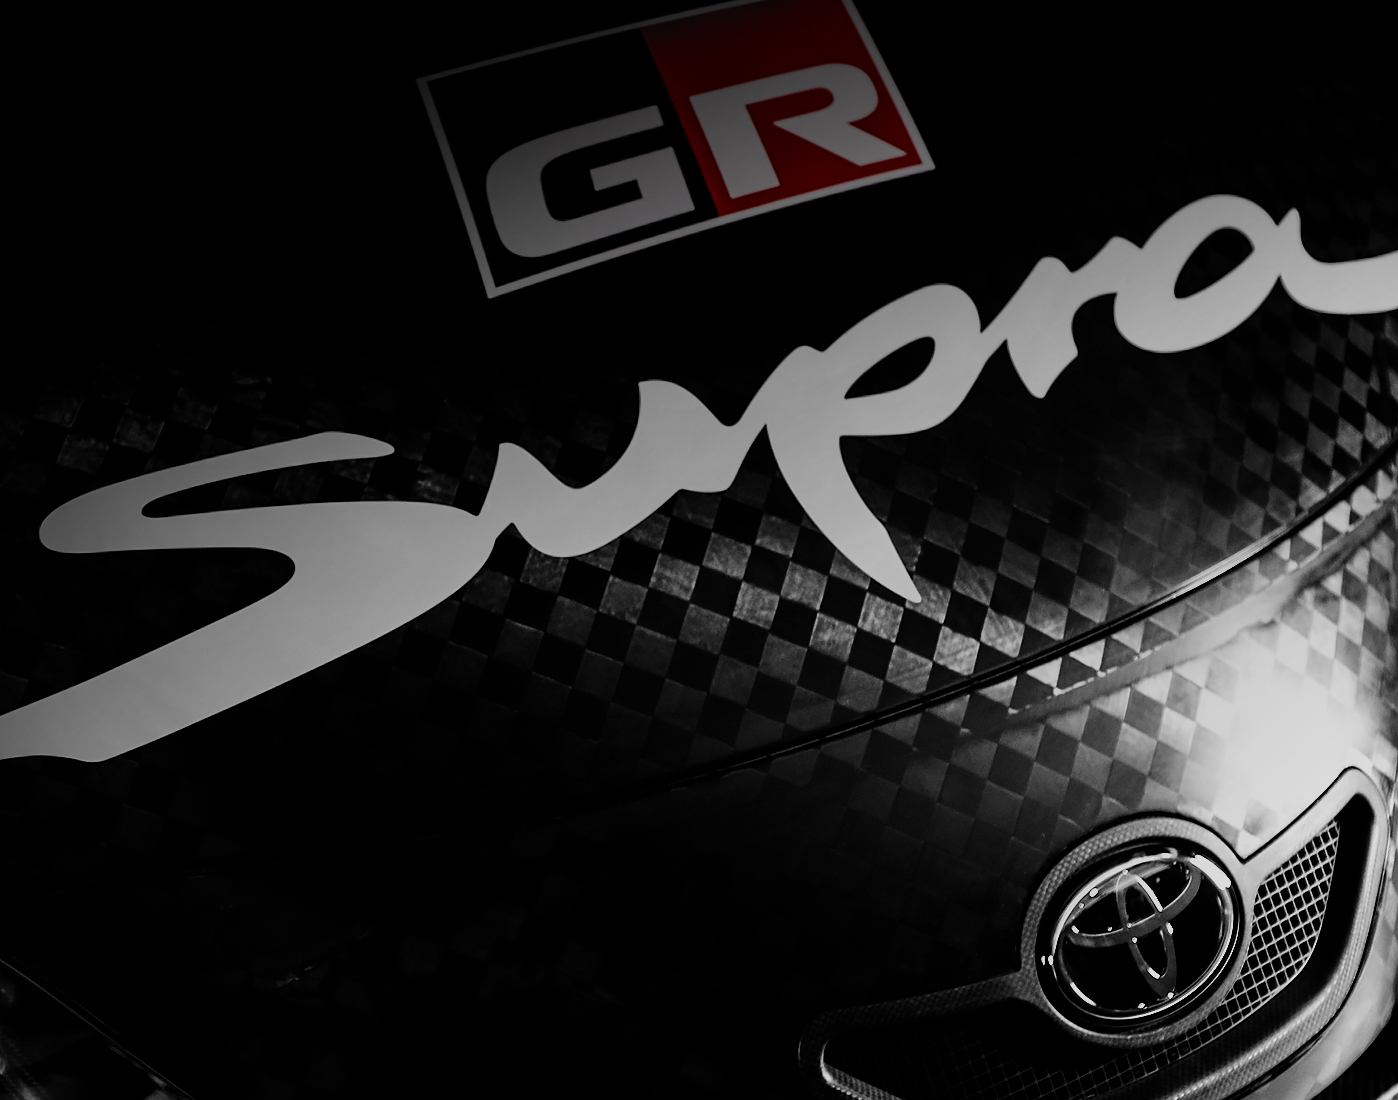 Gr Supra Gt500 Super Gt 年新型車両 19年 Super Gt Toyota Gazoo Racing